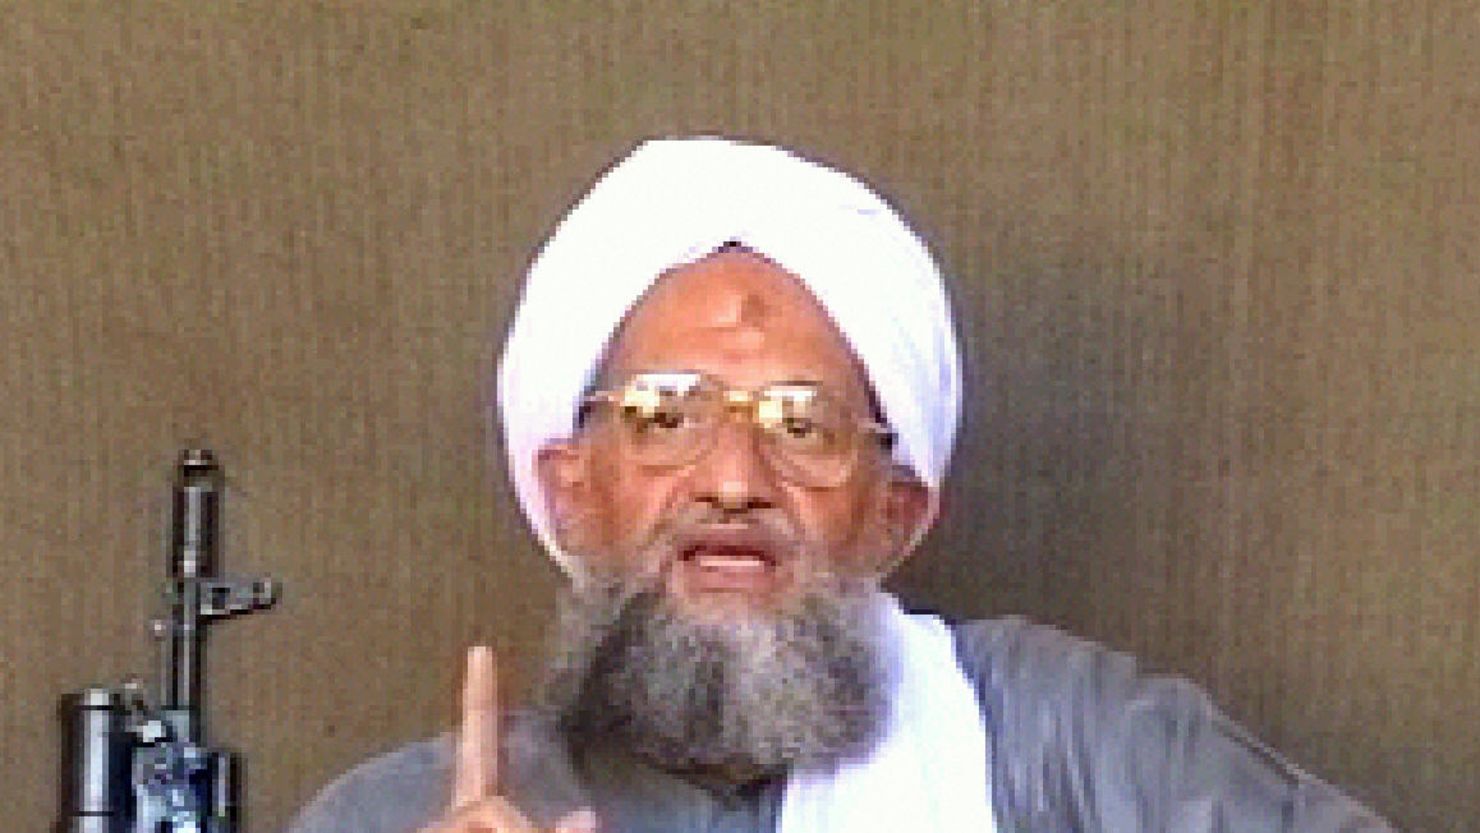 Ayman al-Zawahiri took over leadership of al Qaeda in June 2011 after Osama bin Laden's death.